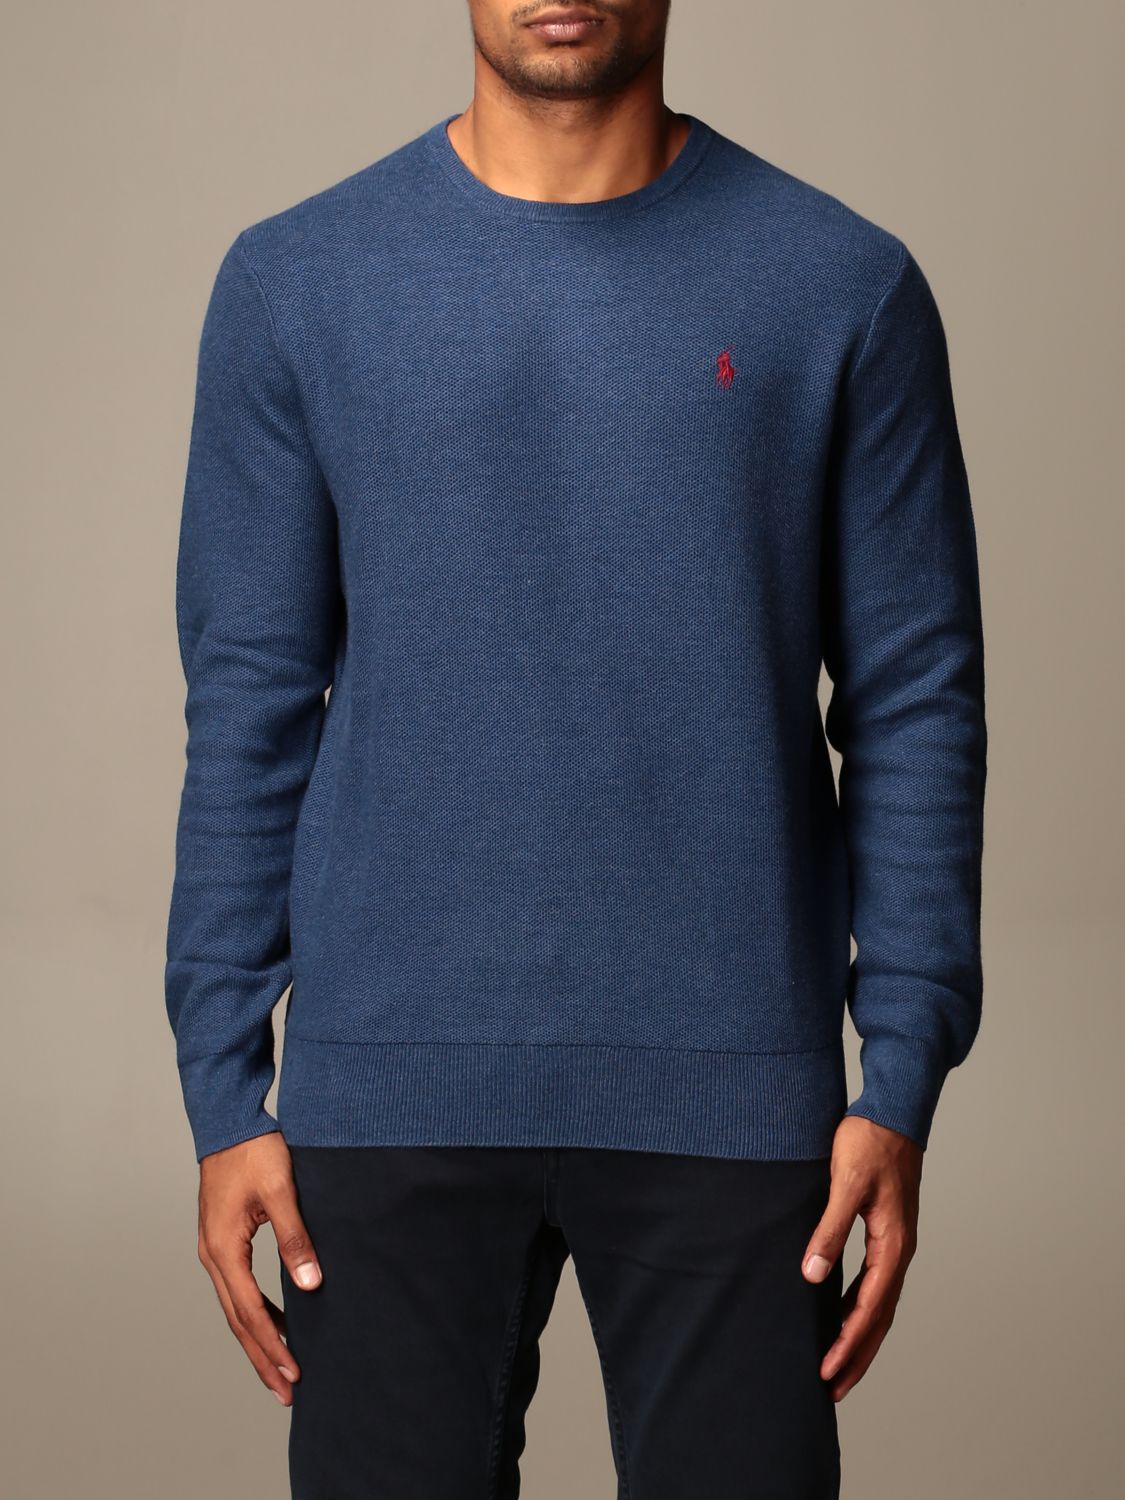 polo ralph lauren blue sweater